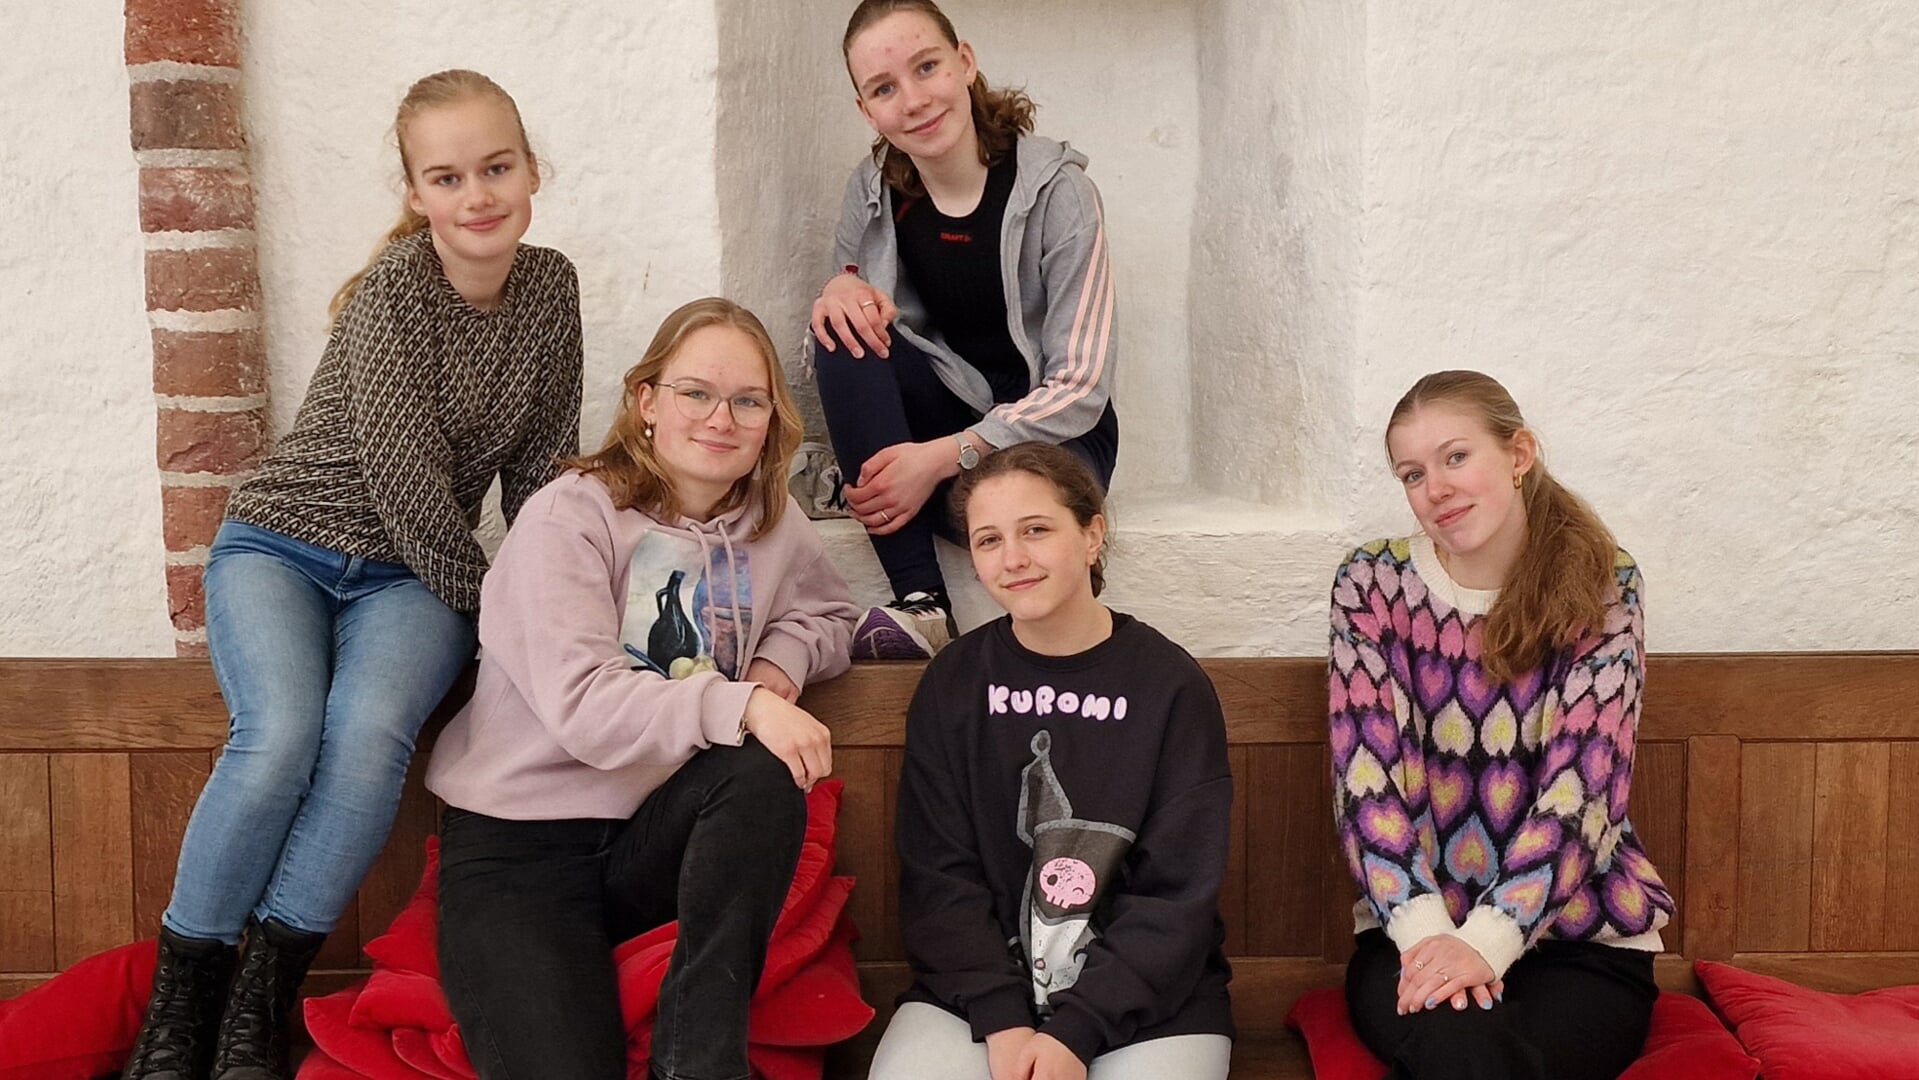 De Termunter toneelgroep (vanaf links): Eva Perdok, Maaike Perdok, Marlies Kuiper, Zoey van der Wal en Nina Klopstra (eigen foto).